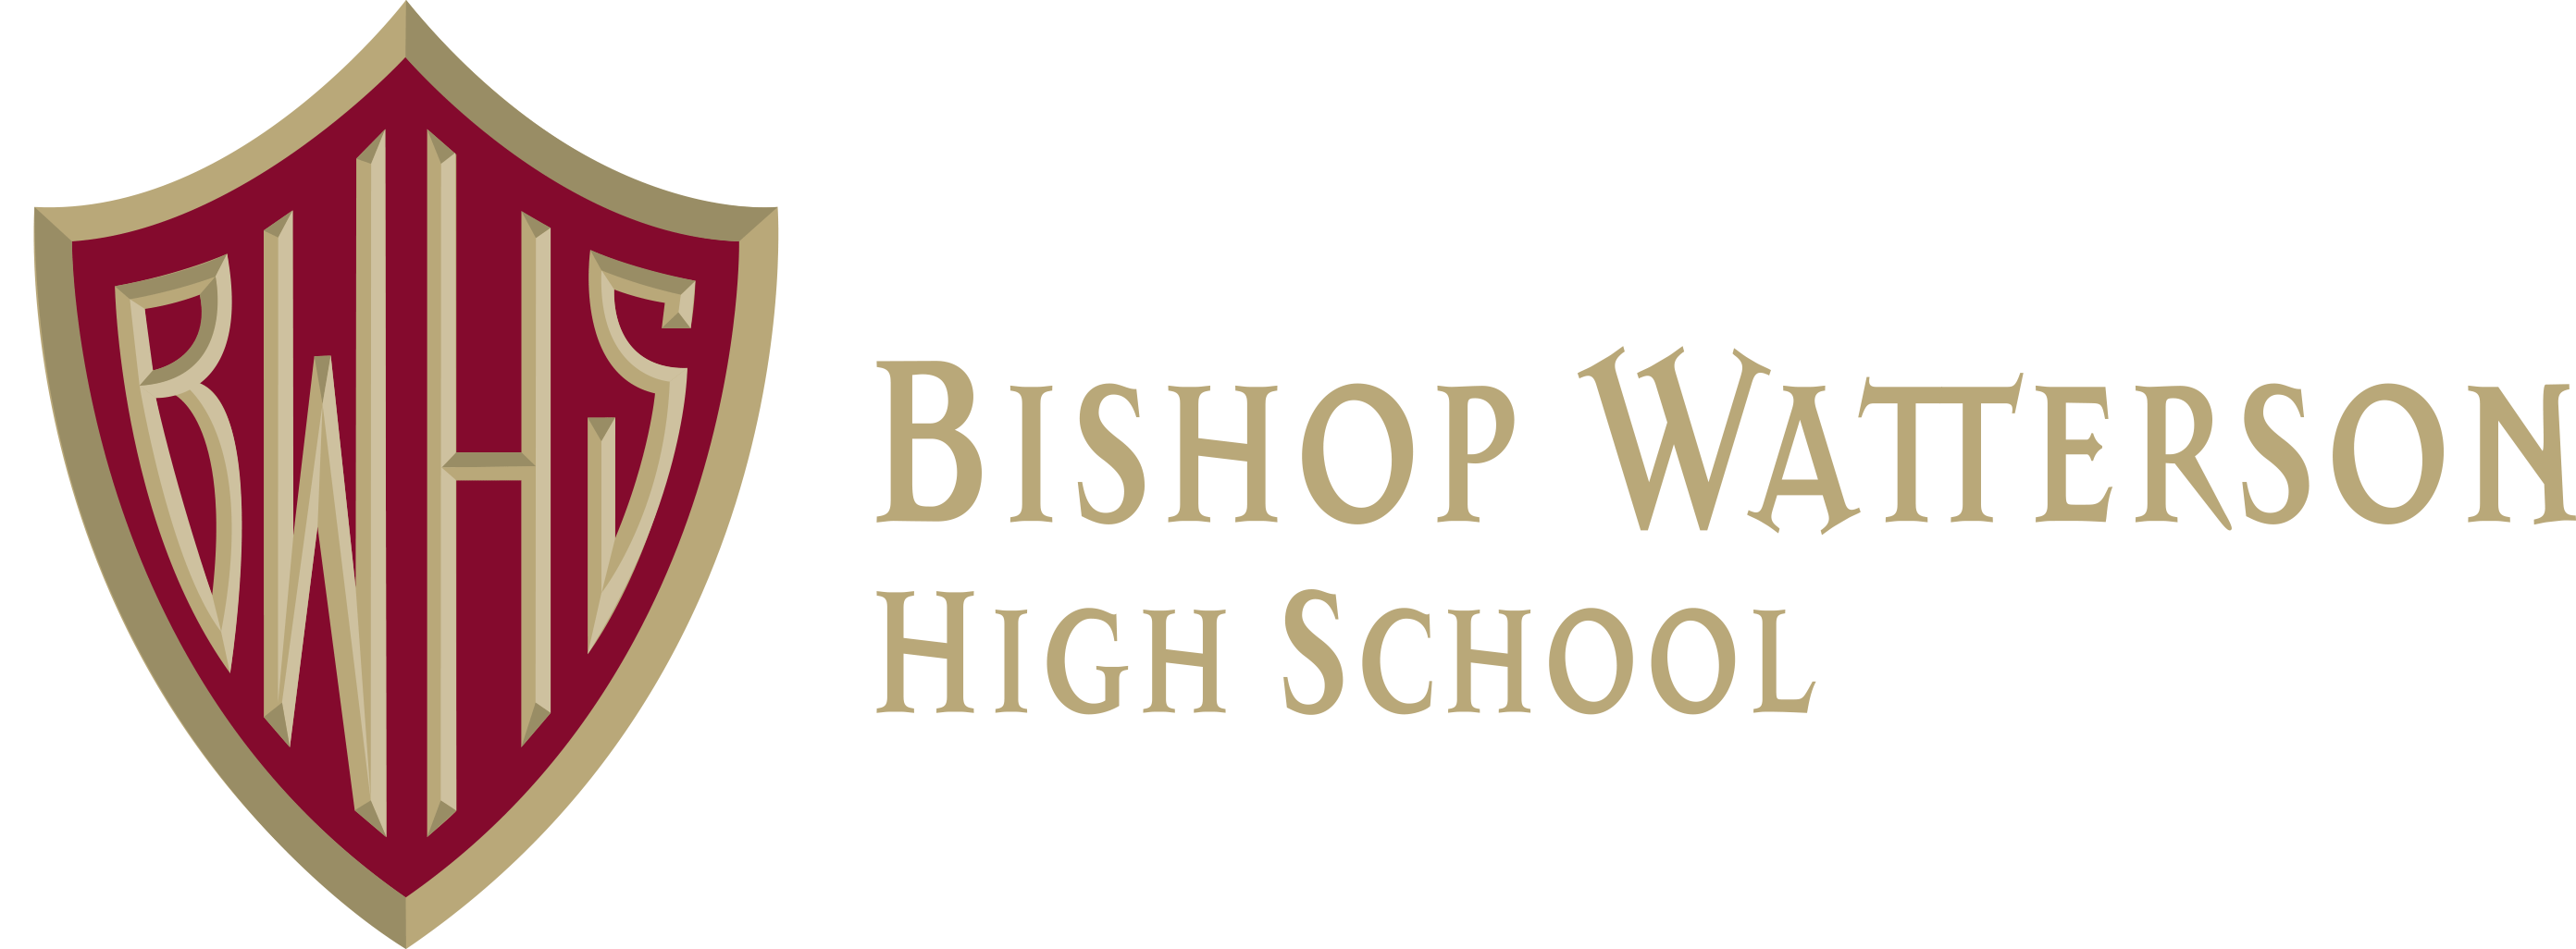 Bishop Watterson High School